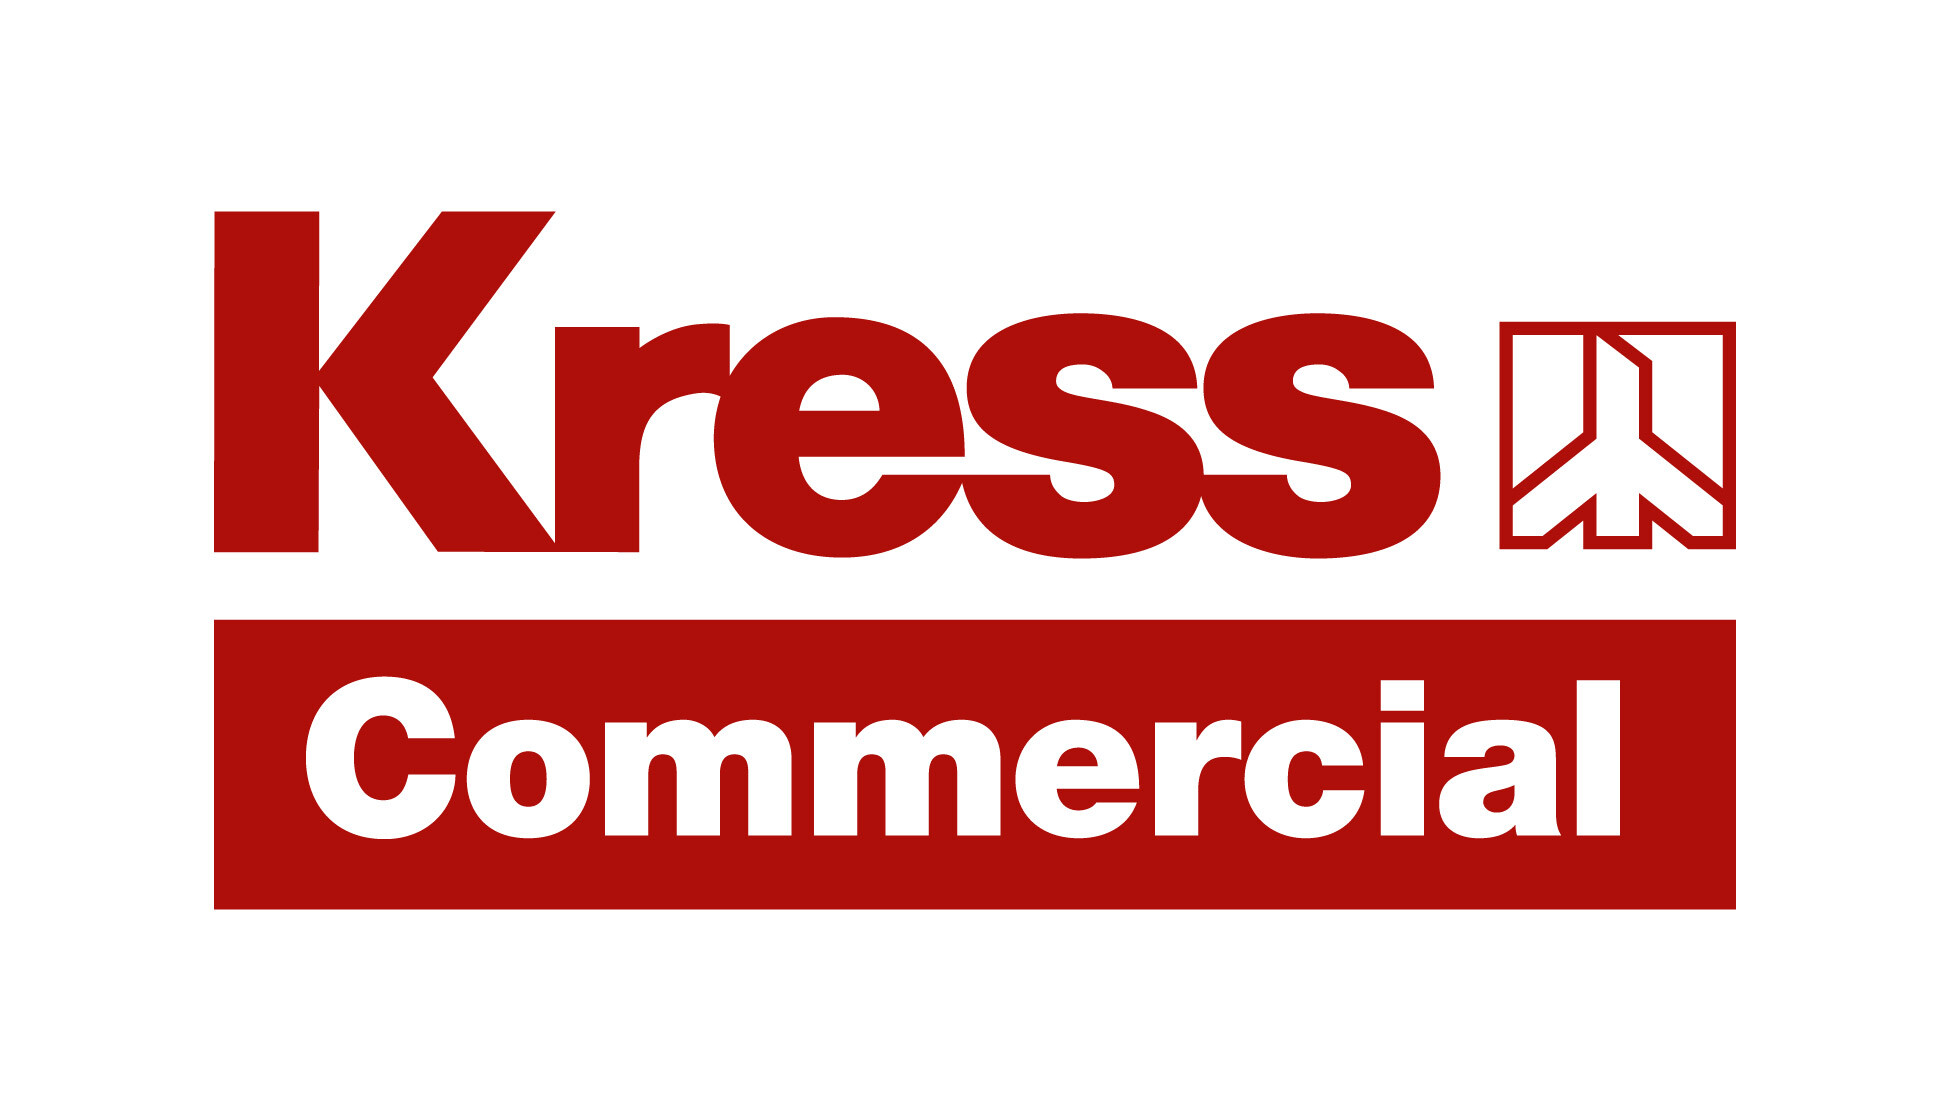 kress commercial logo